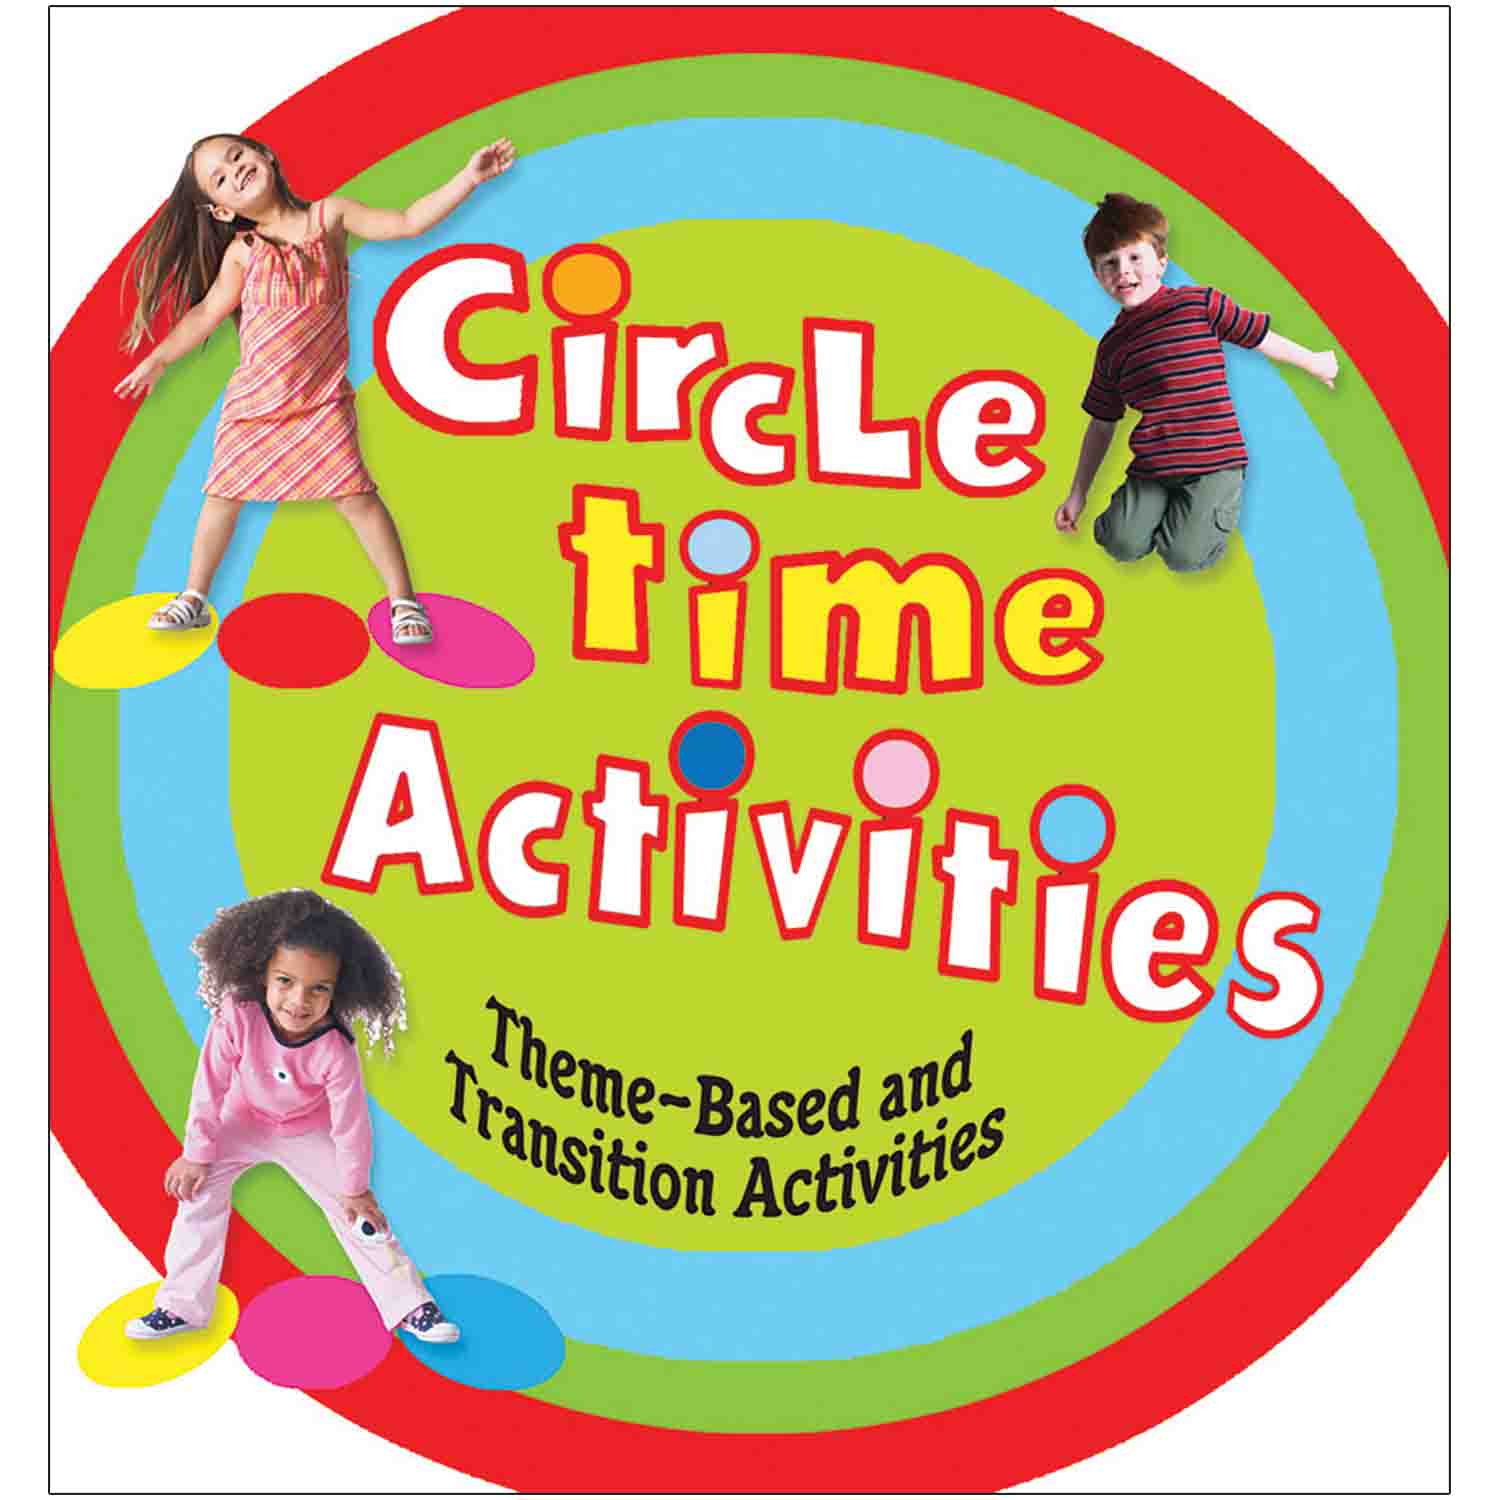 Circle Time Activities CD